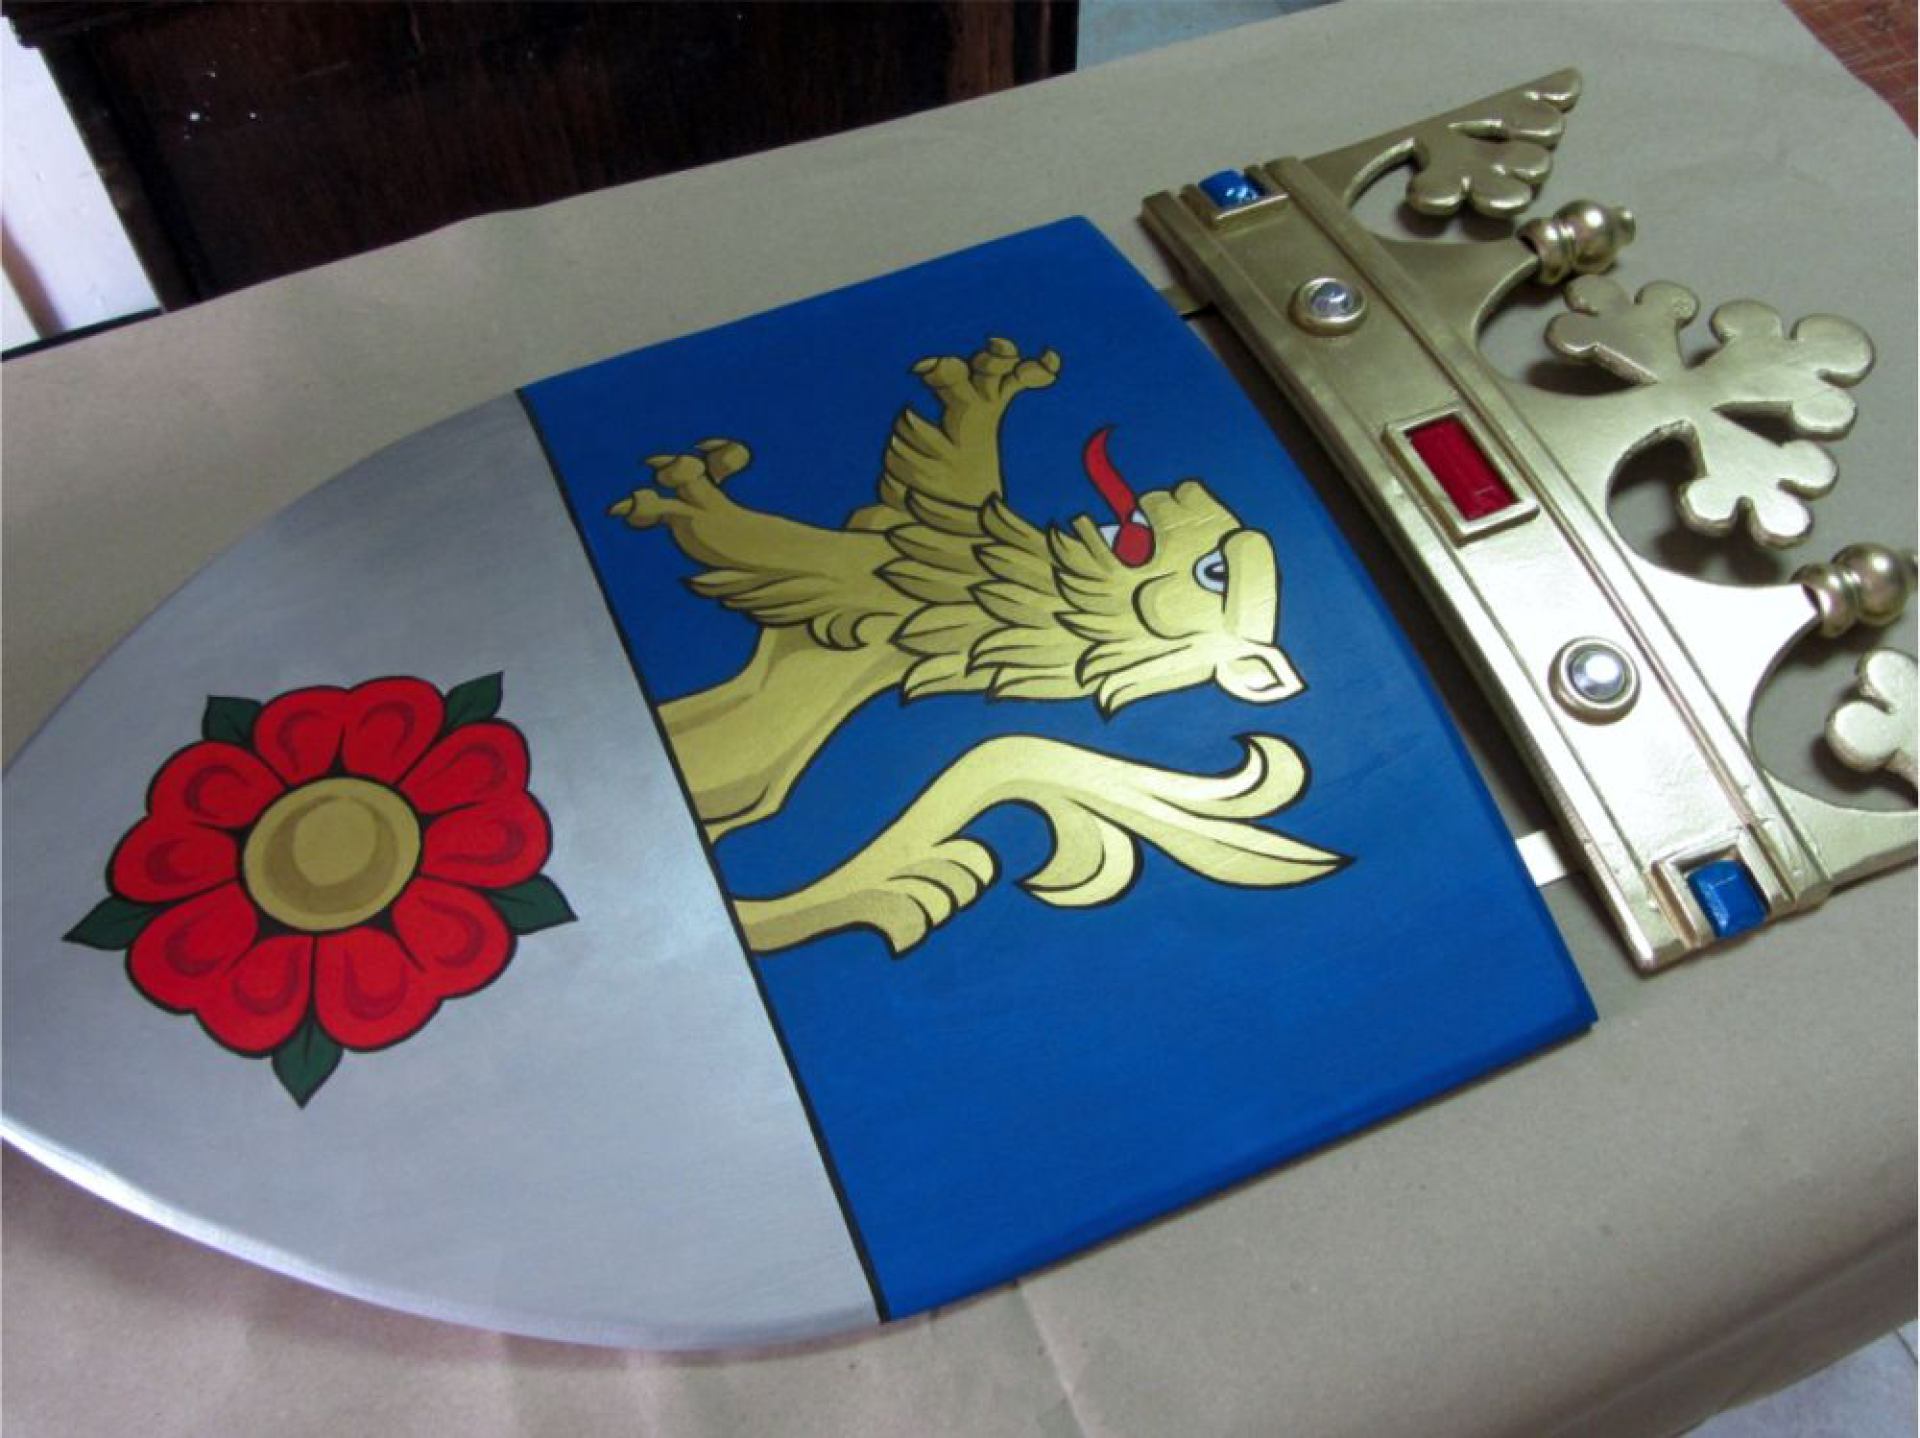 6-oruzje-i-heraldicki-rekviziti-2858603719.jpg